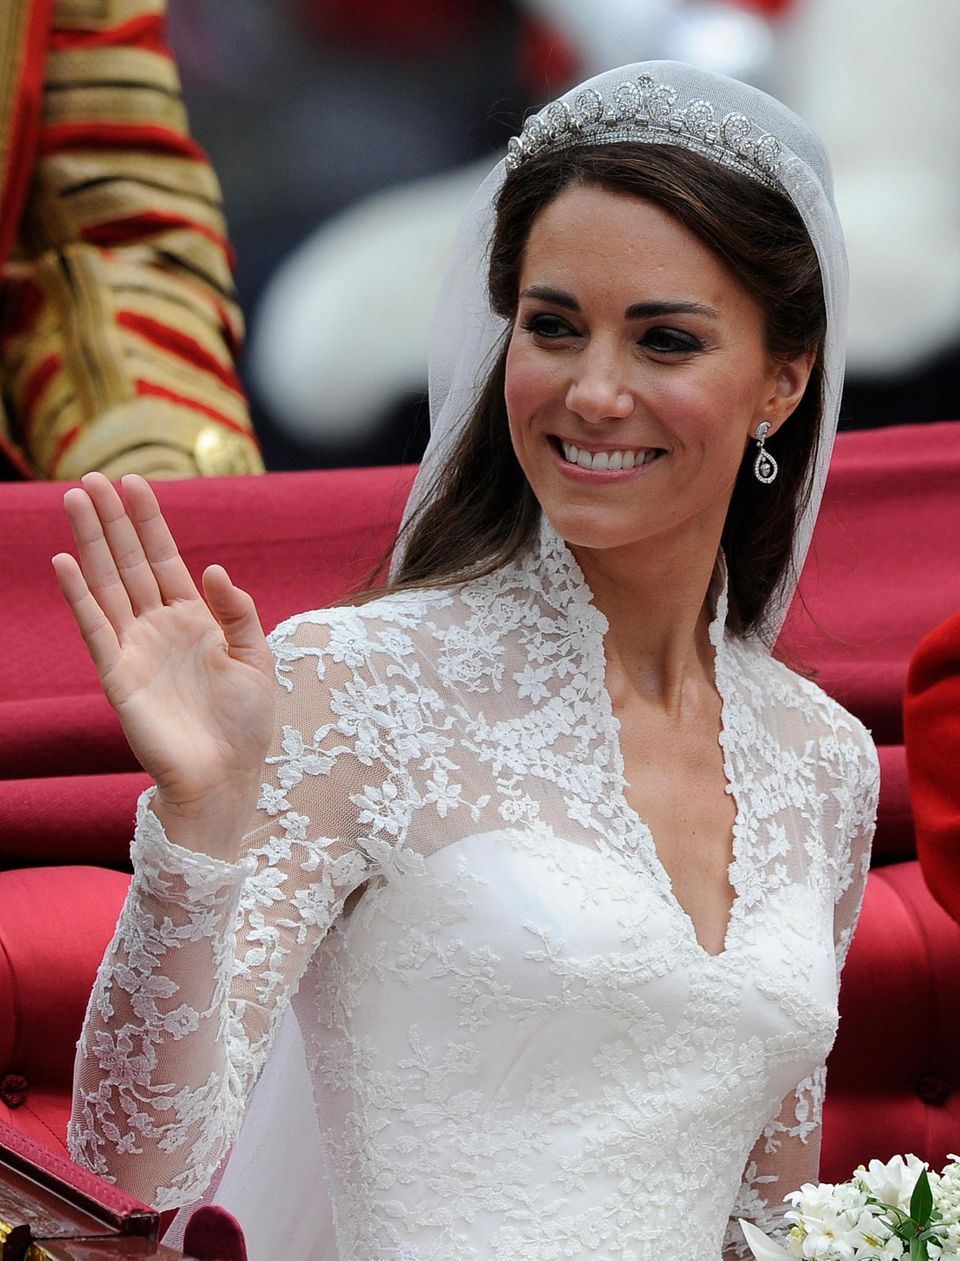 Die "Halo"-Tiara von Cartier ist an Kates Hochzeitstag etwas "Geliehenes" von Queen Elizabeth II.